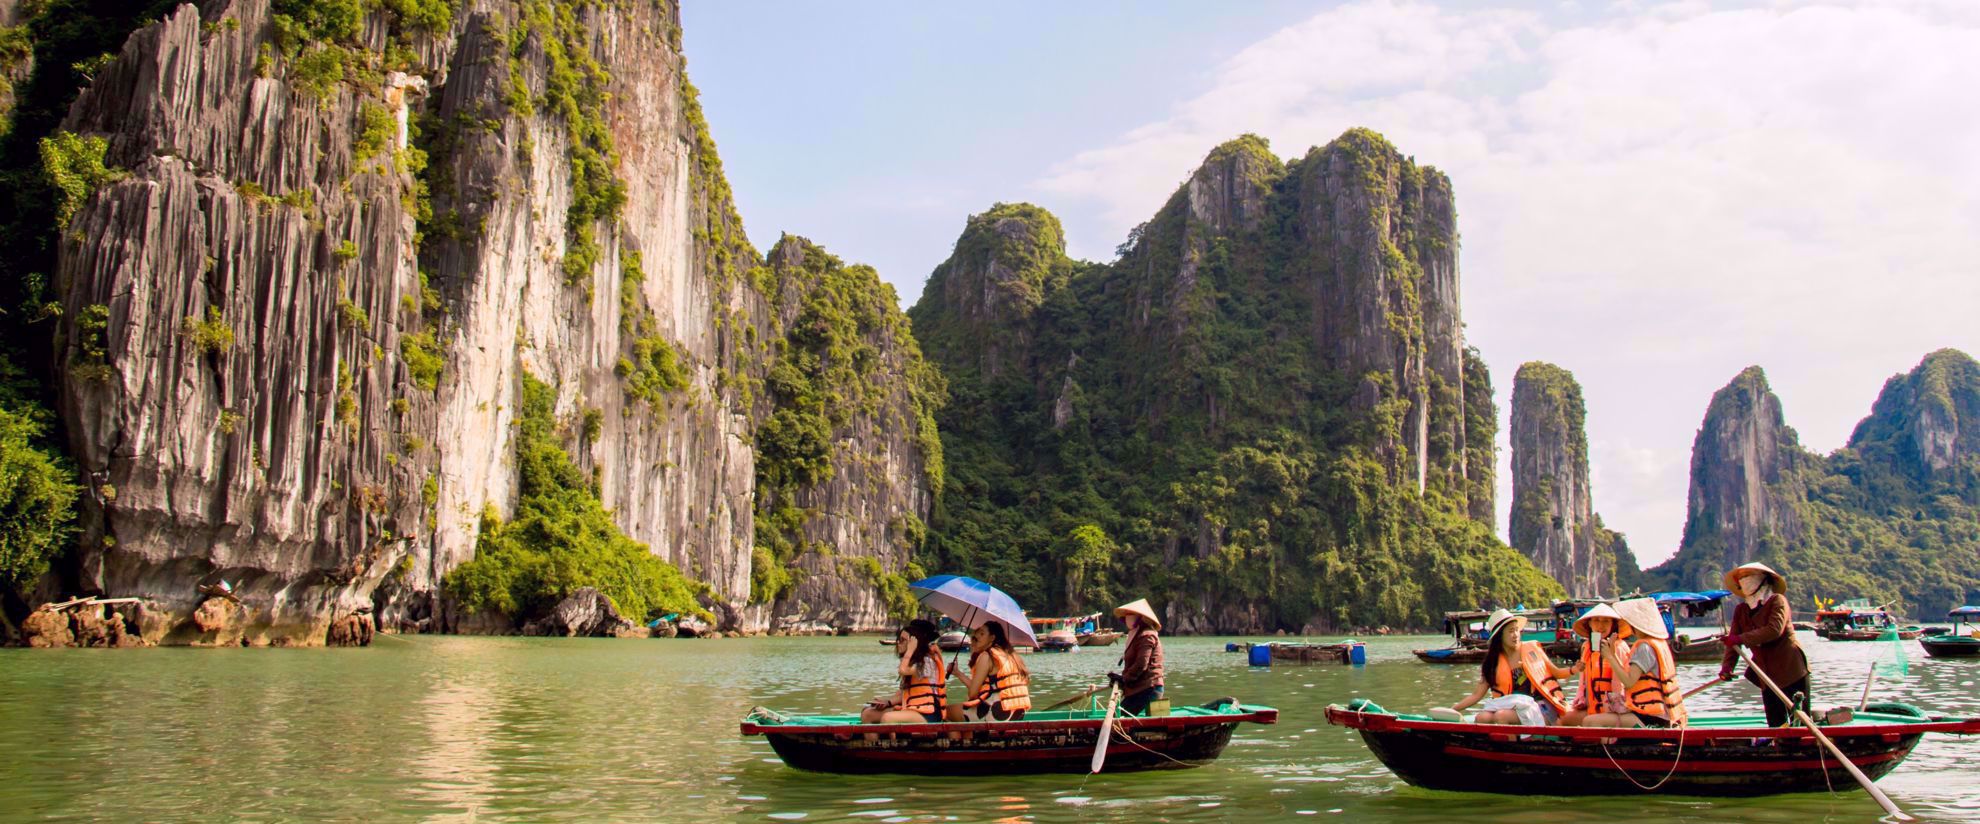 women's group kayaking tour through vietnam